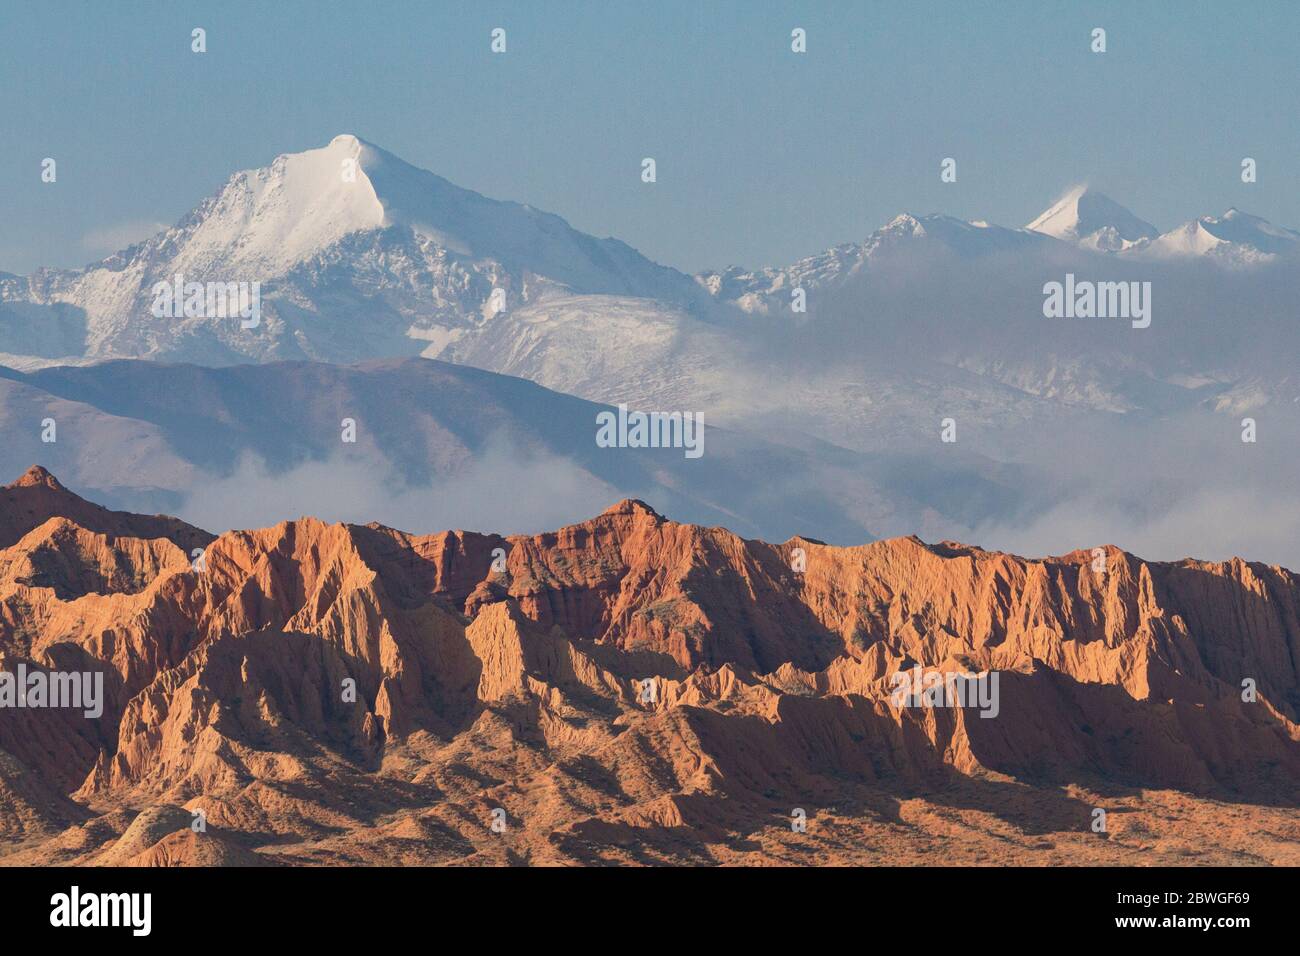 Montañas nevadas y formaciones geológicas en el área del Lago Issyk Kul, Kirguistán Foto de stock